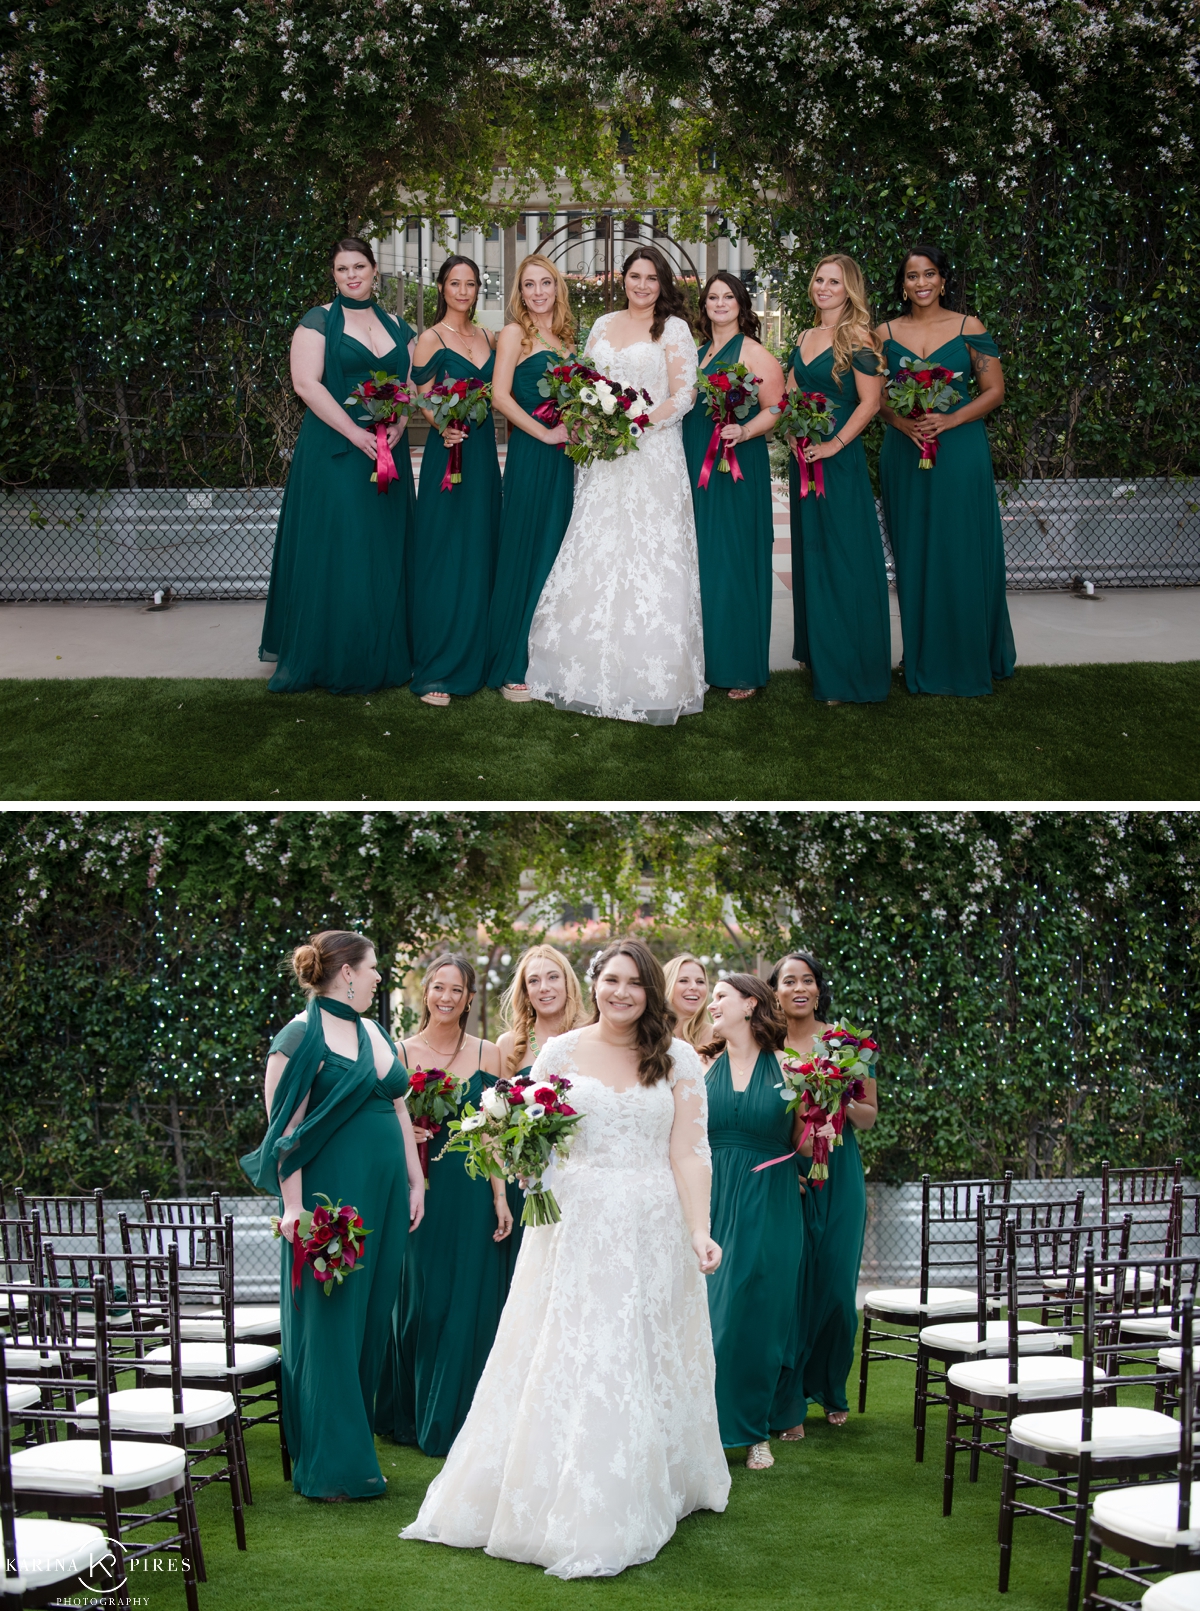 Emerald green bridesmaids dresses